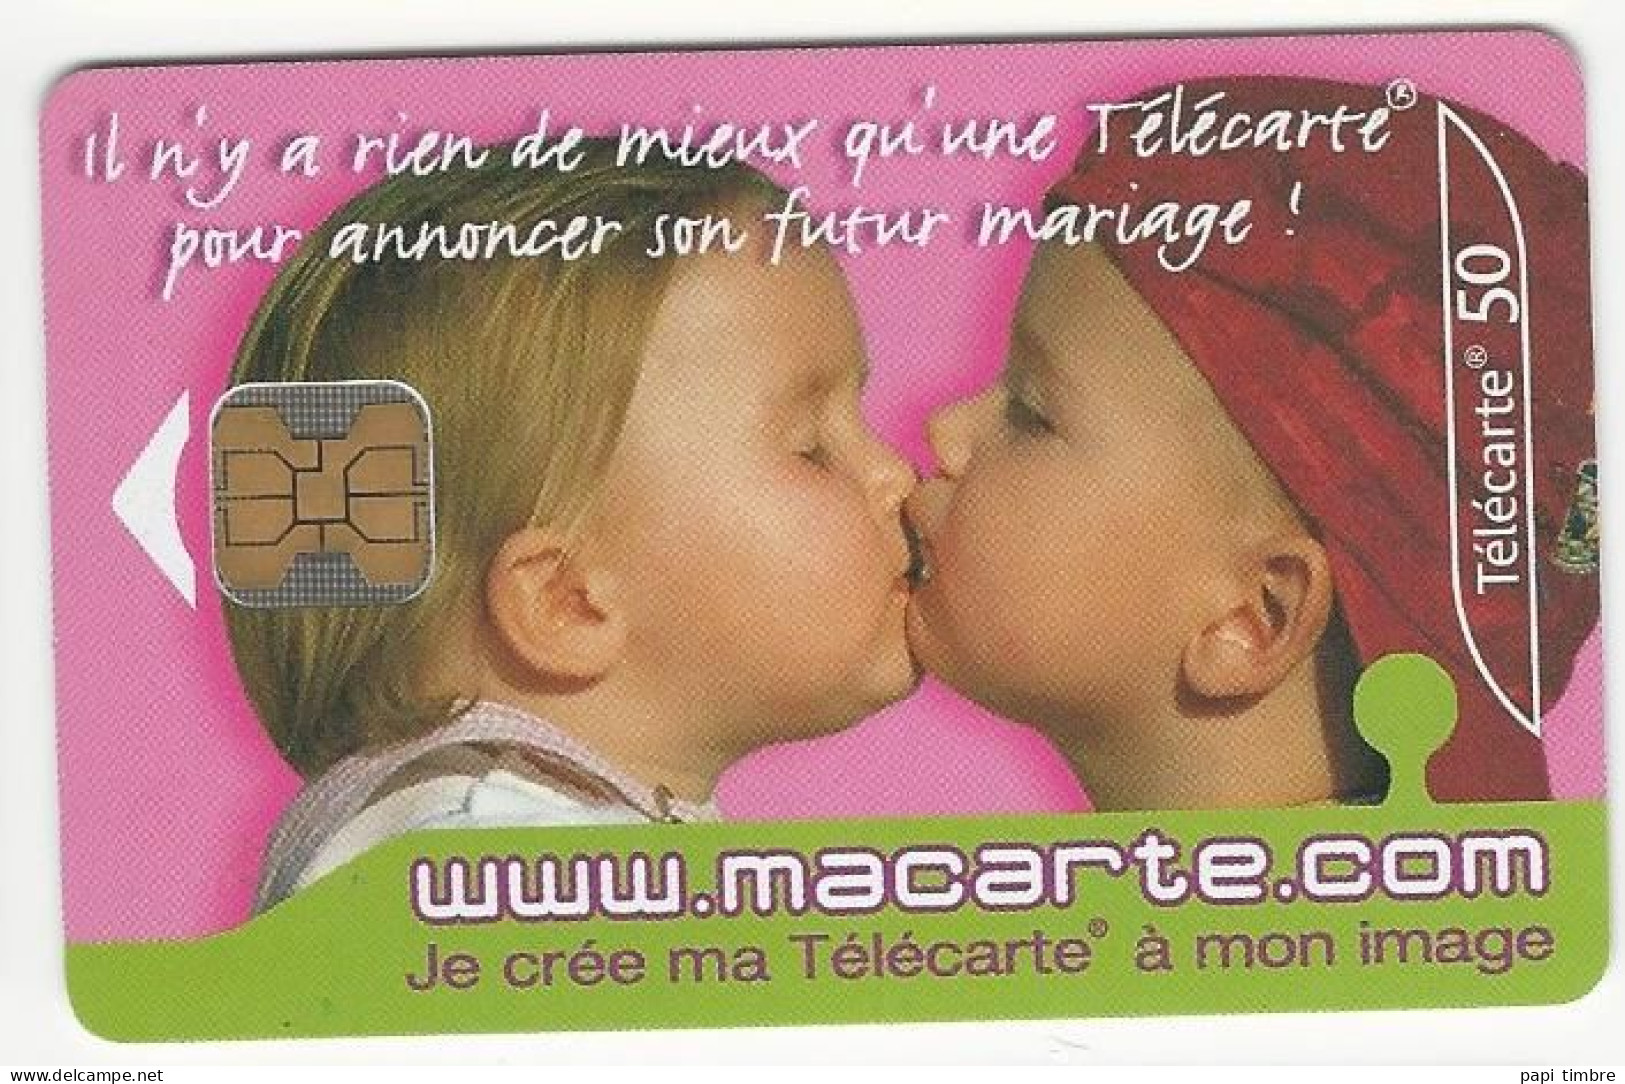 Télécarte "macarte.com" Je Crée Ma Télécarte à Mon Image - 50 Unités - Personnages